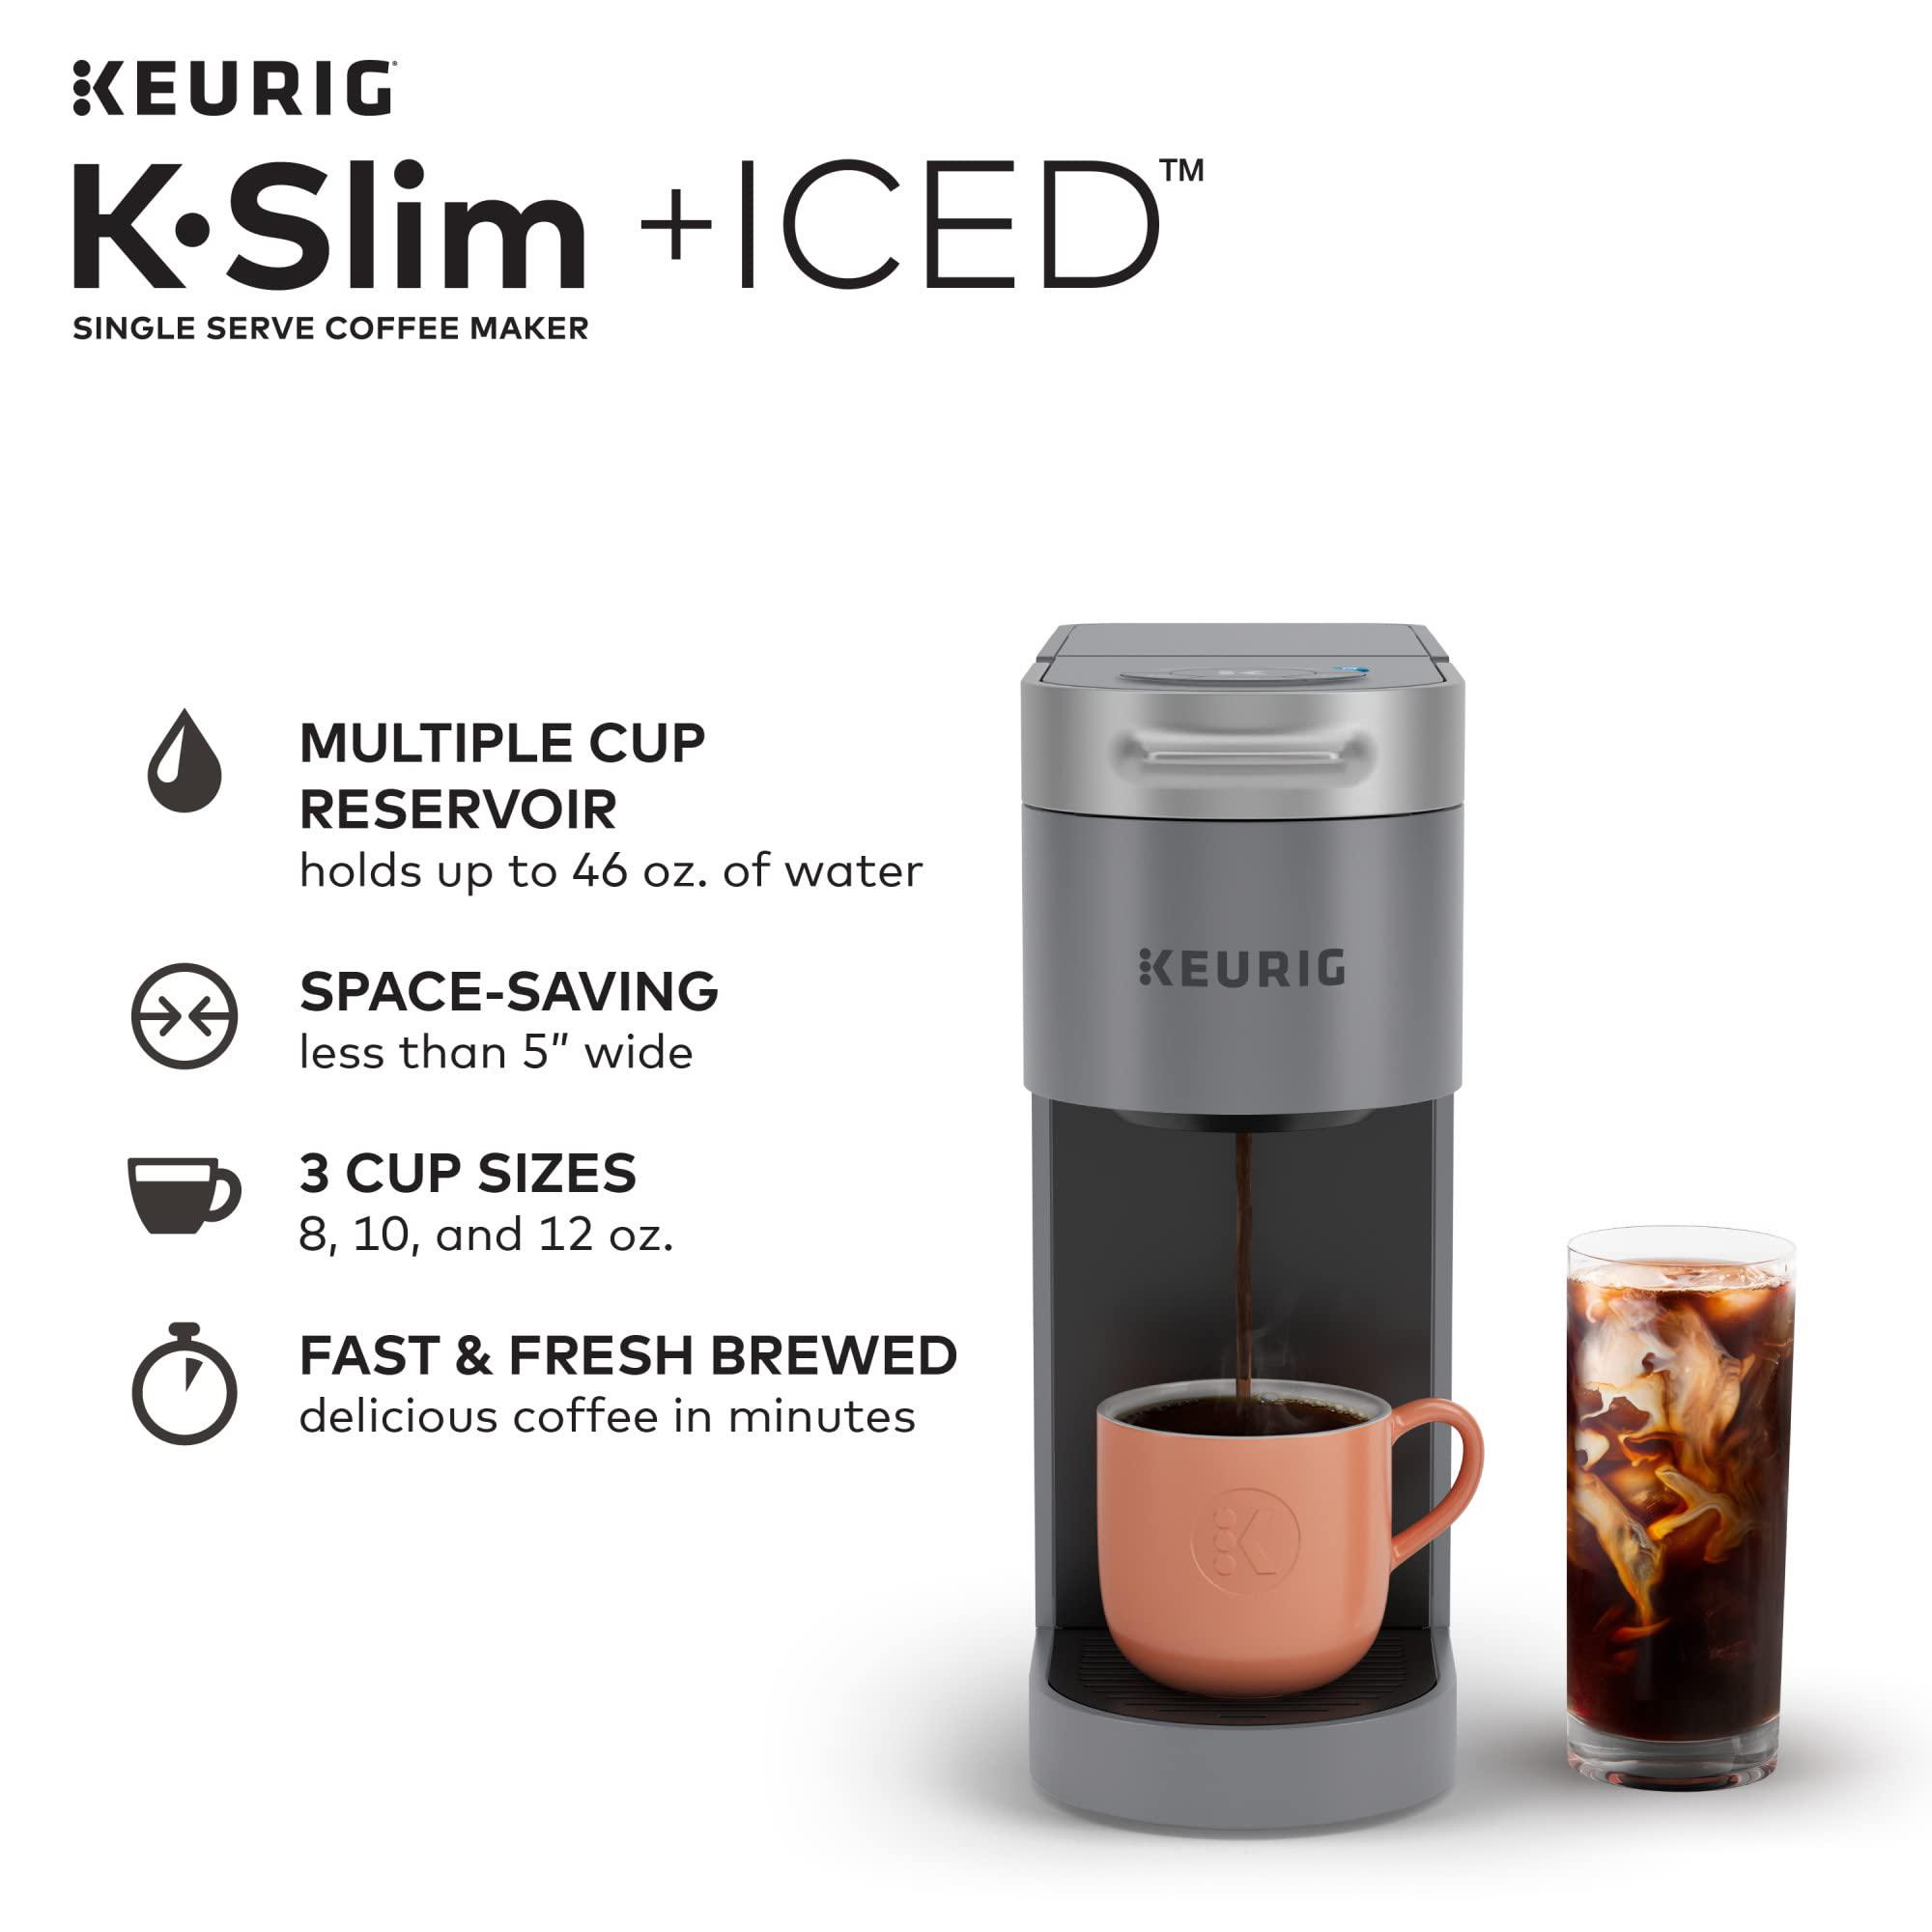 keurig k-slim + iced single serve coffee maker, brews 8 to 12oz. cups, gray (renewed)